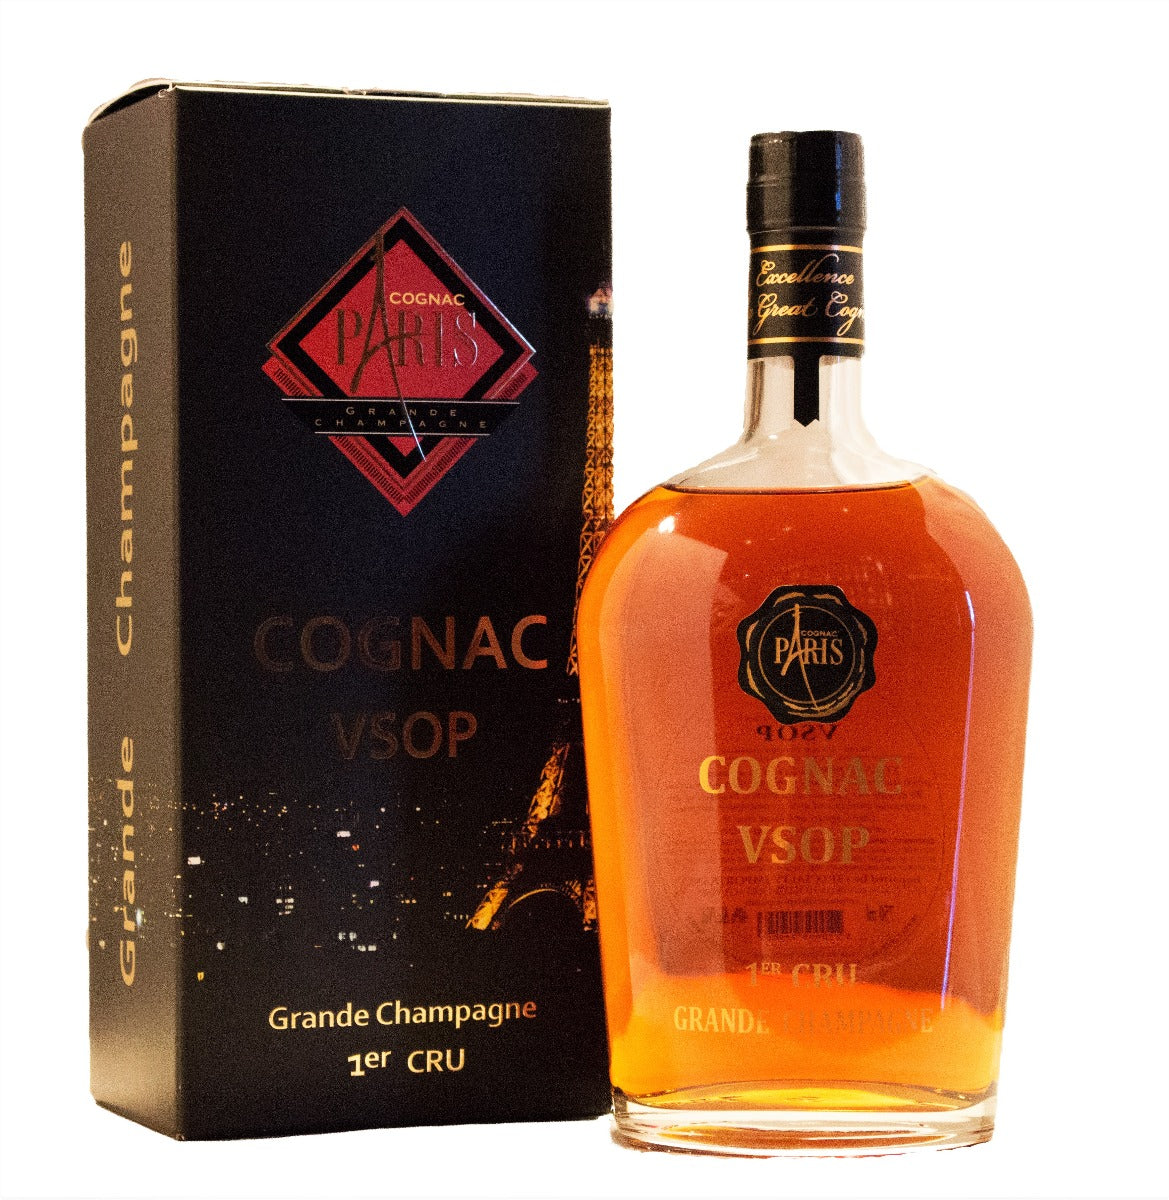 PARIS COGNAC VSOP GRANDE CHAMPAGNE FRANCE 750ML - Remedy Liquor